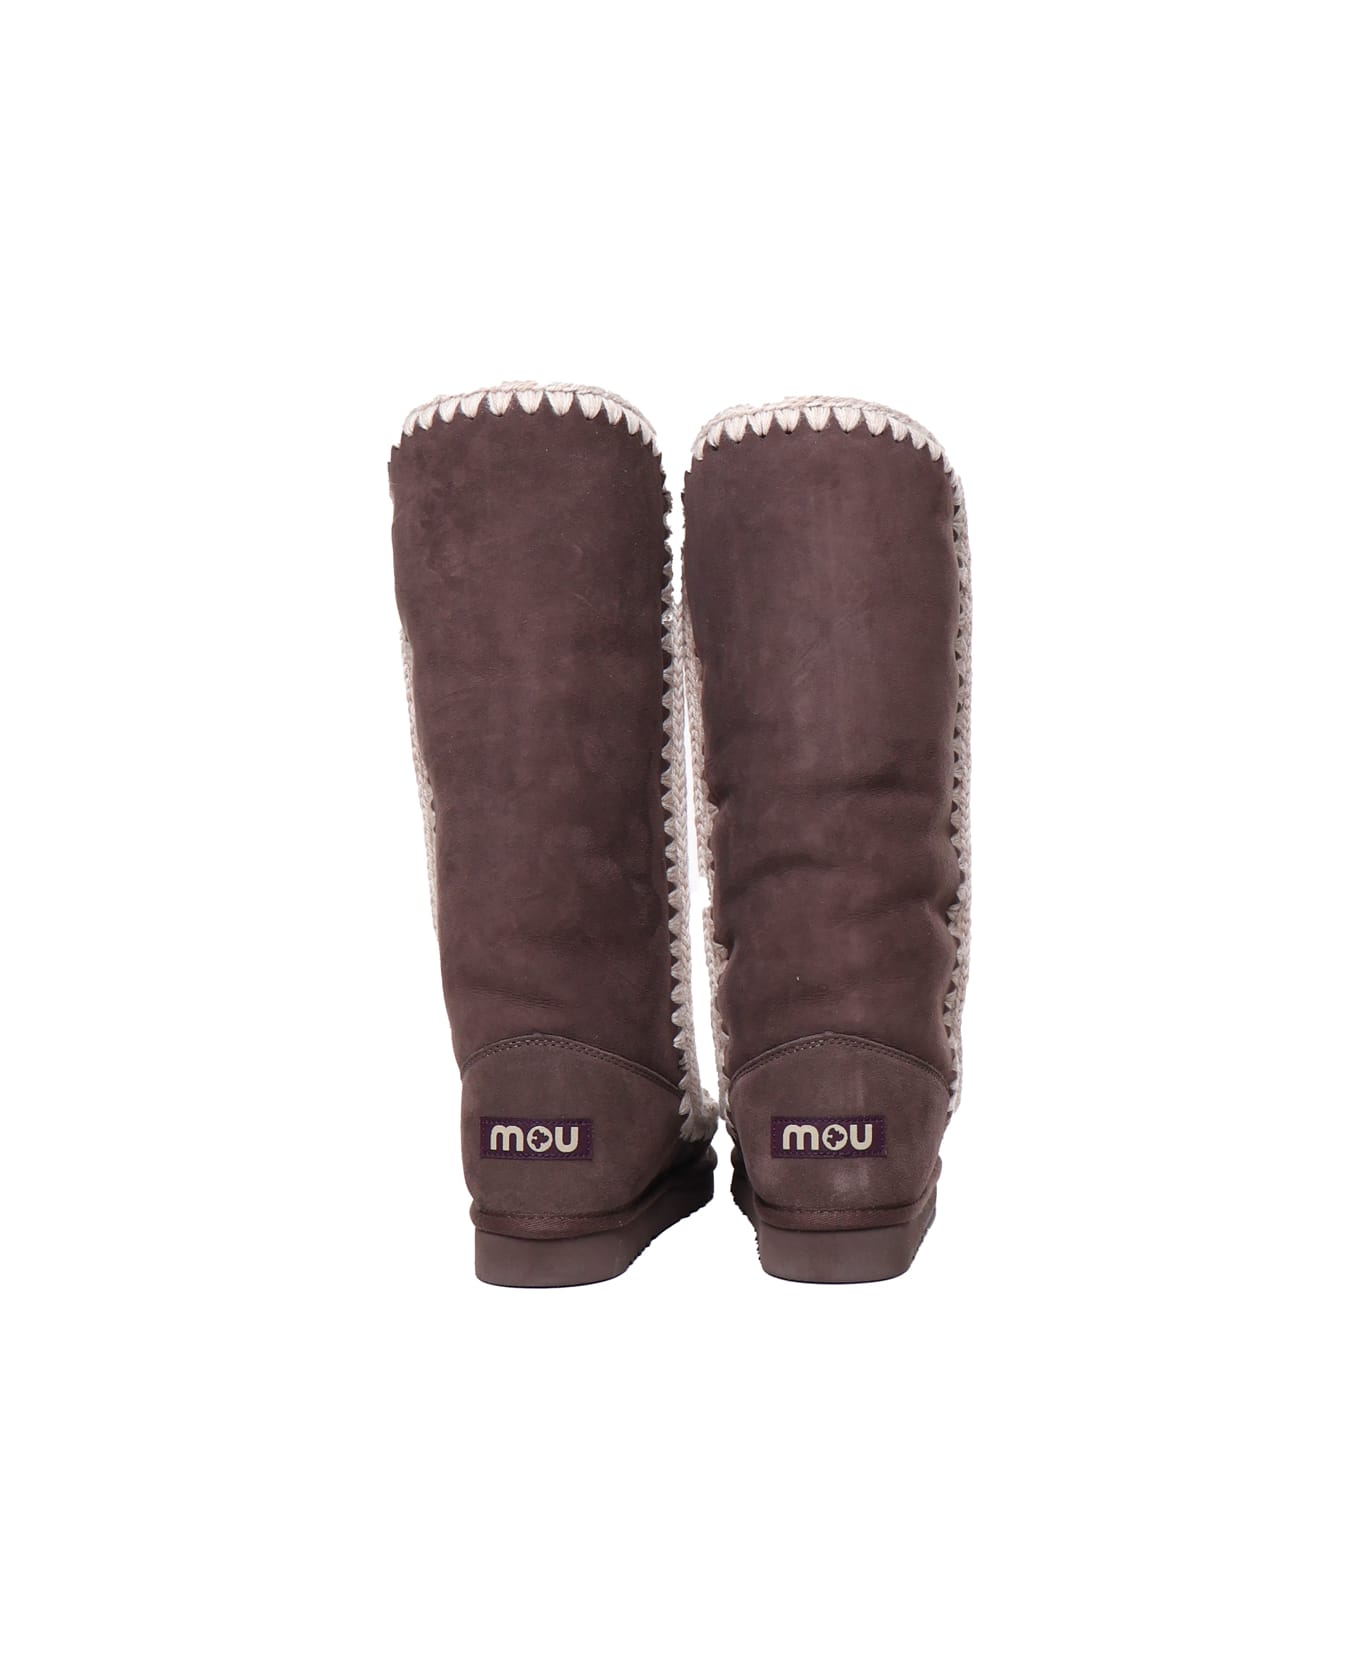 Mou Eskimo Boots 40 - Dark brown